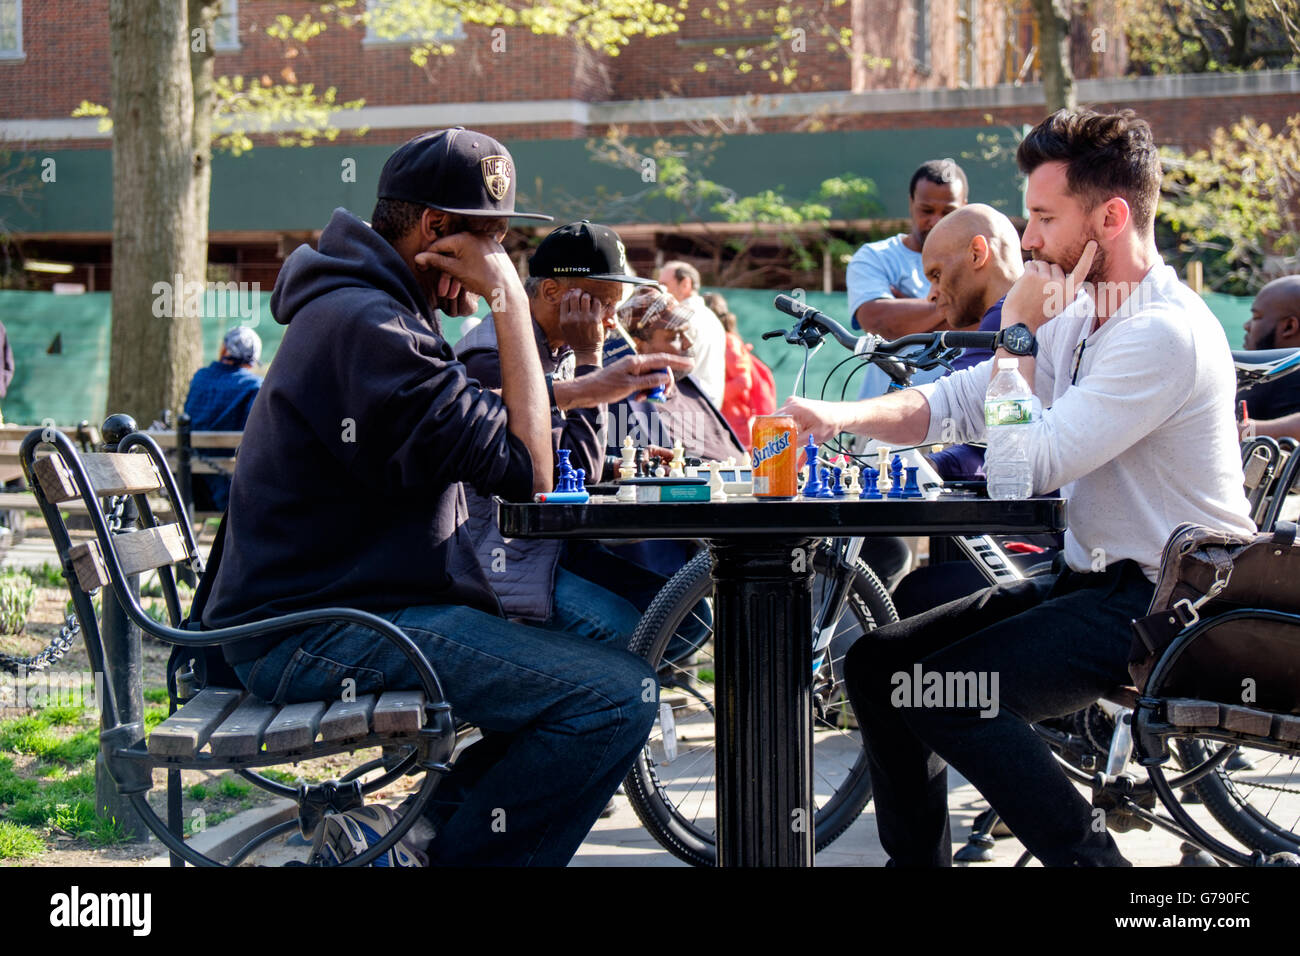 Joueurs d'échecs à Washington Square Park, Greenwich Village, New York, USA Banque D'Images